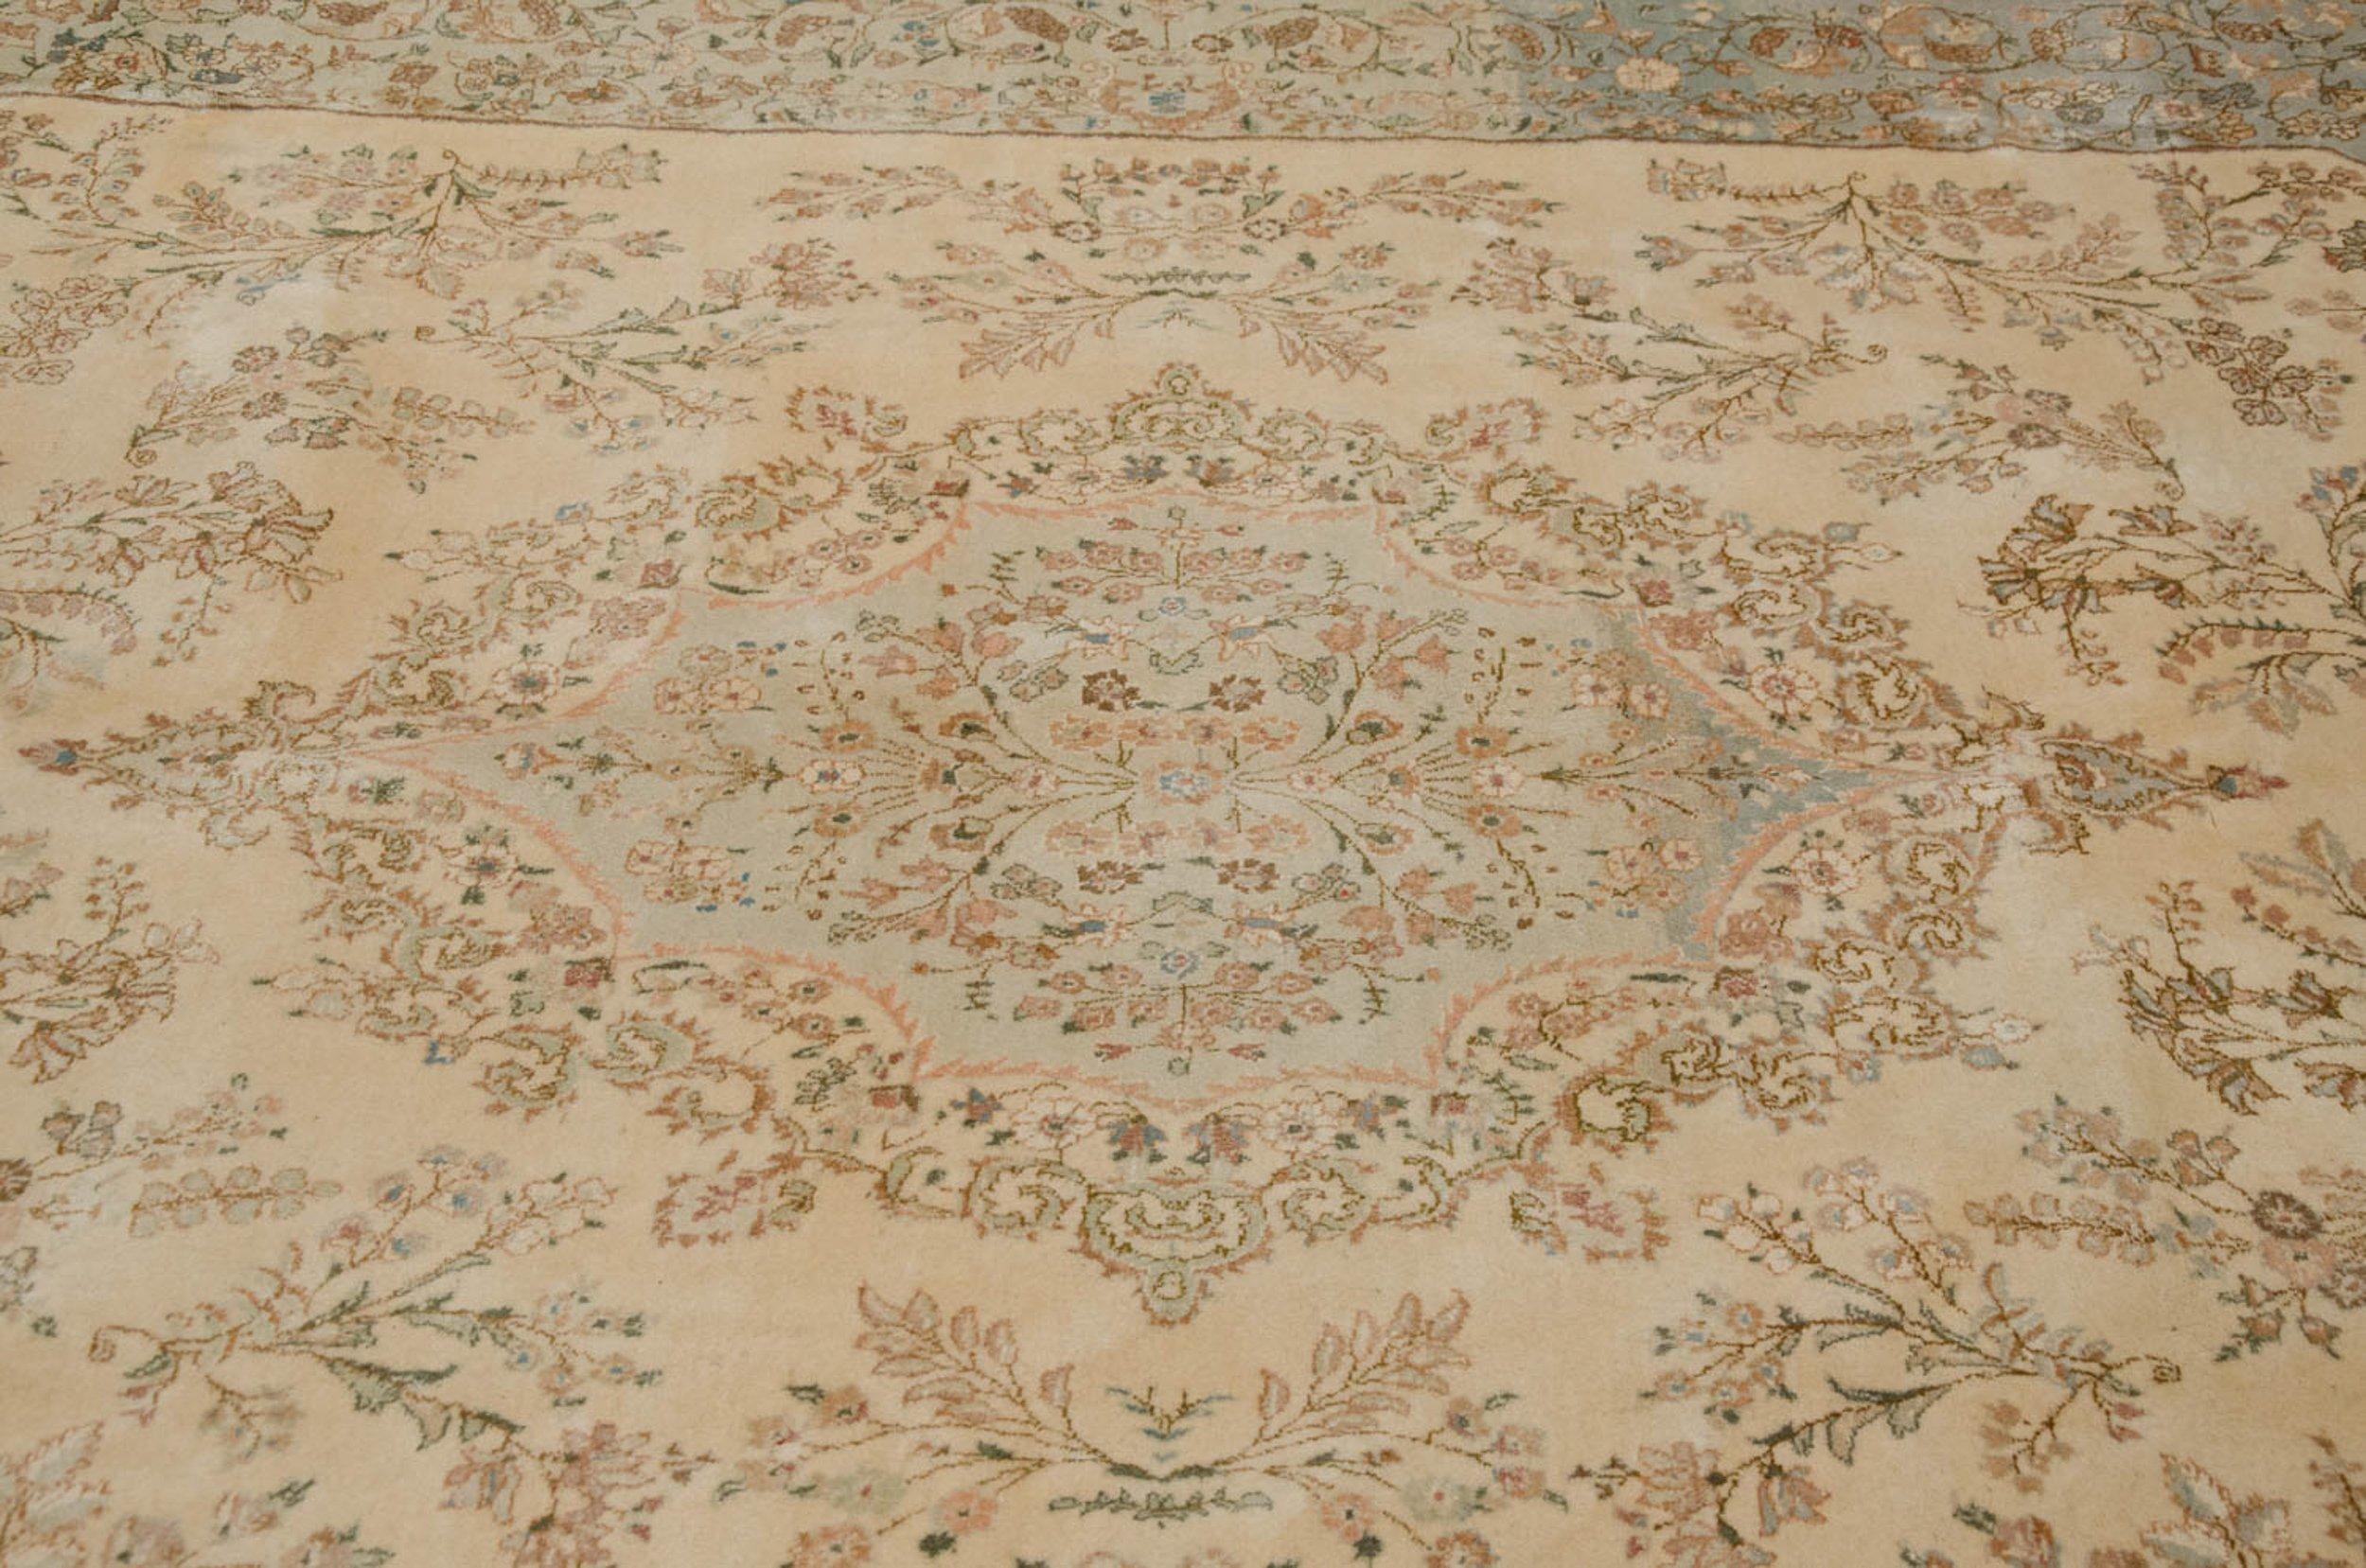 Hand-Knotted Vintage Tabriz Carpet For Sale